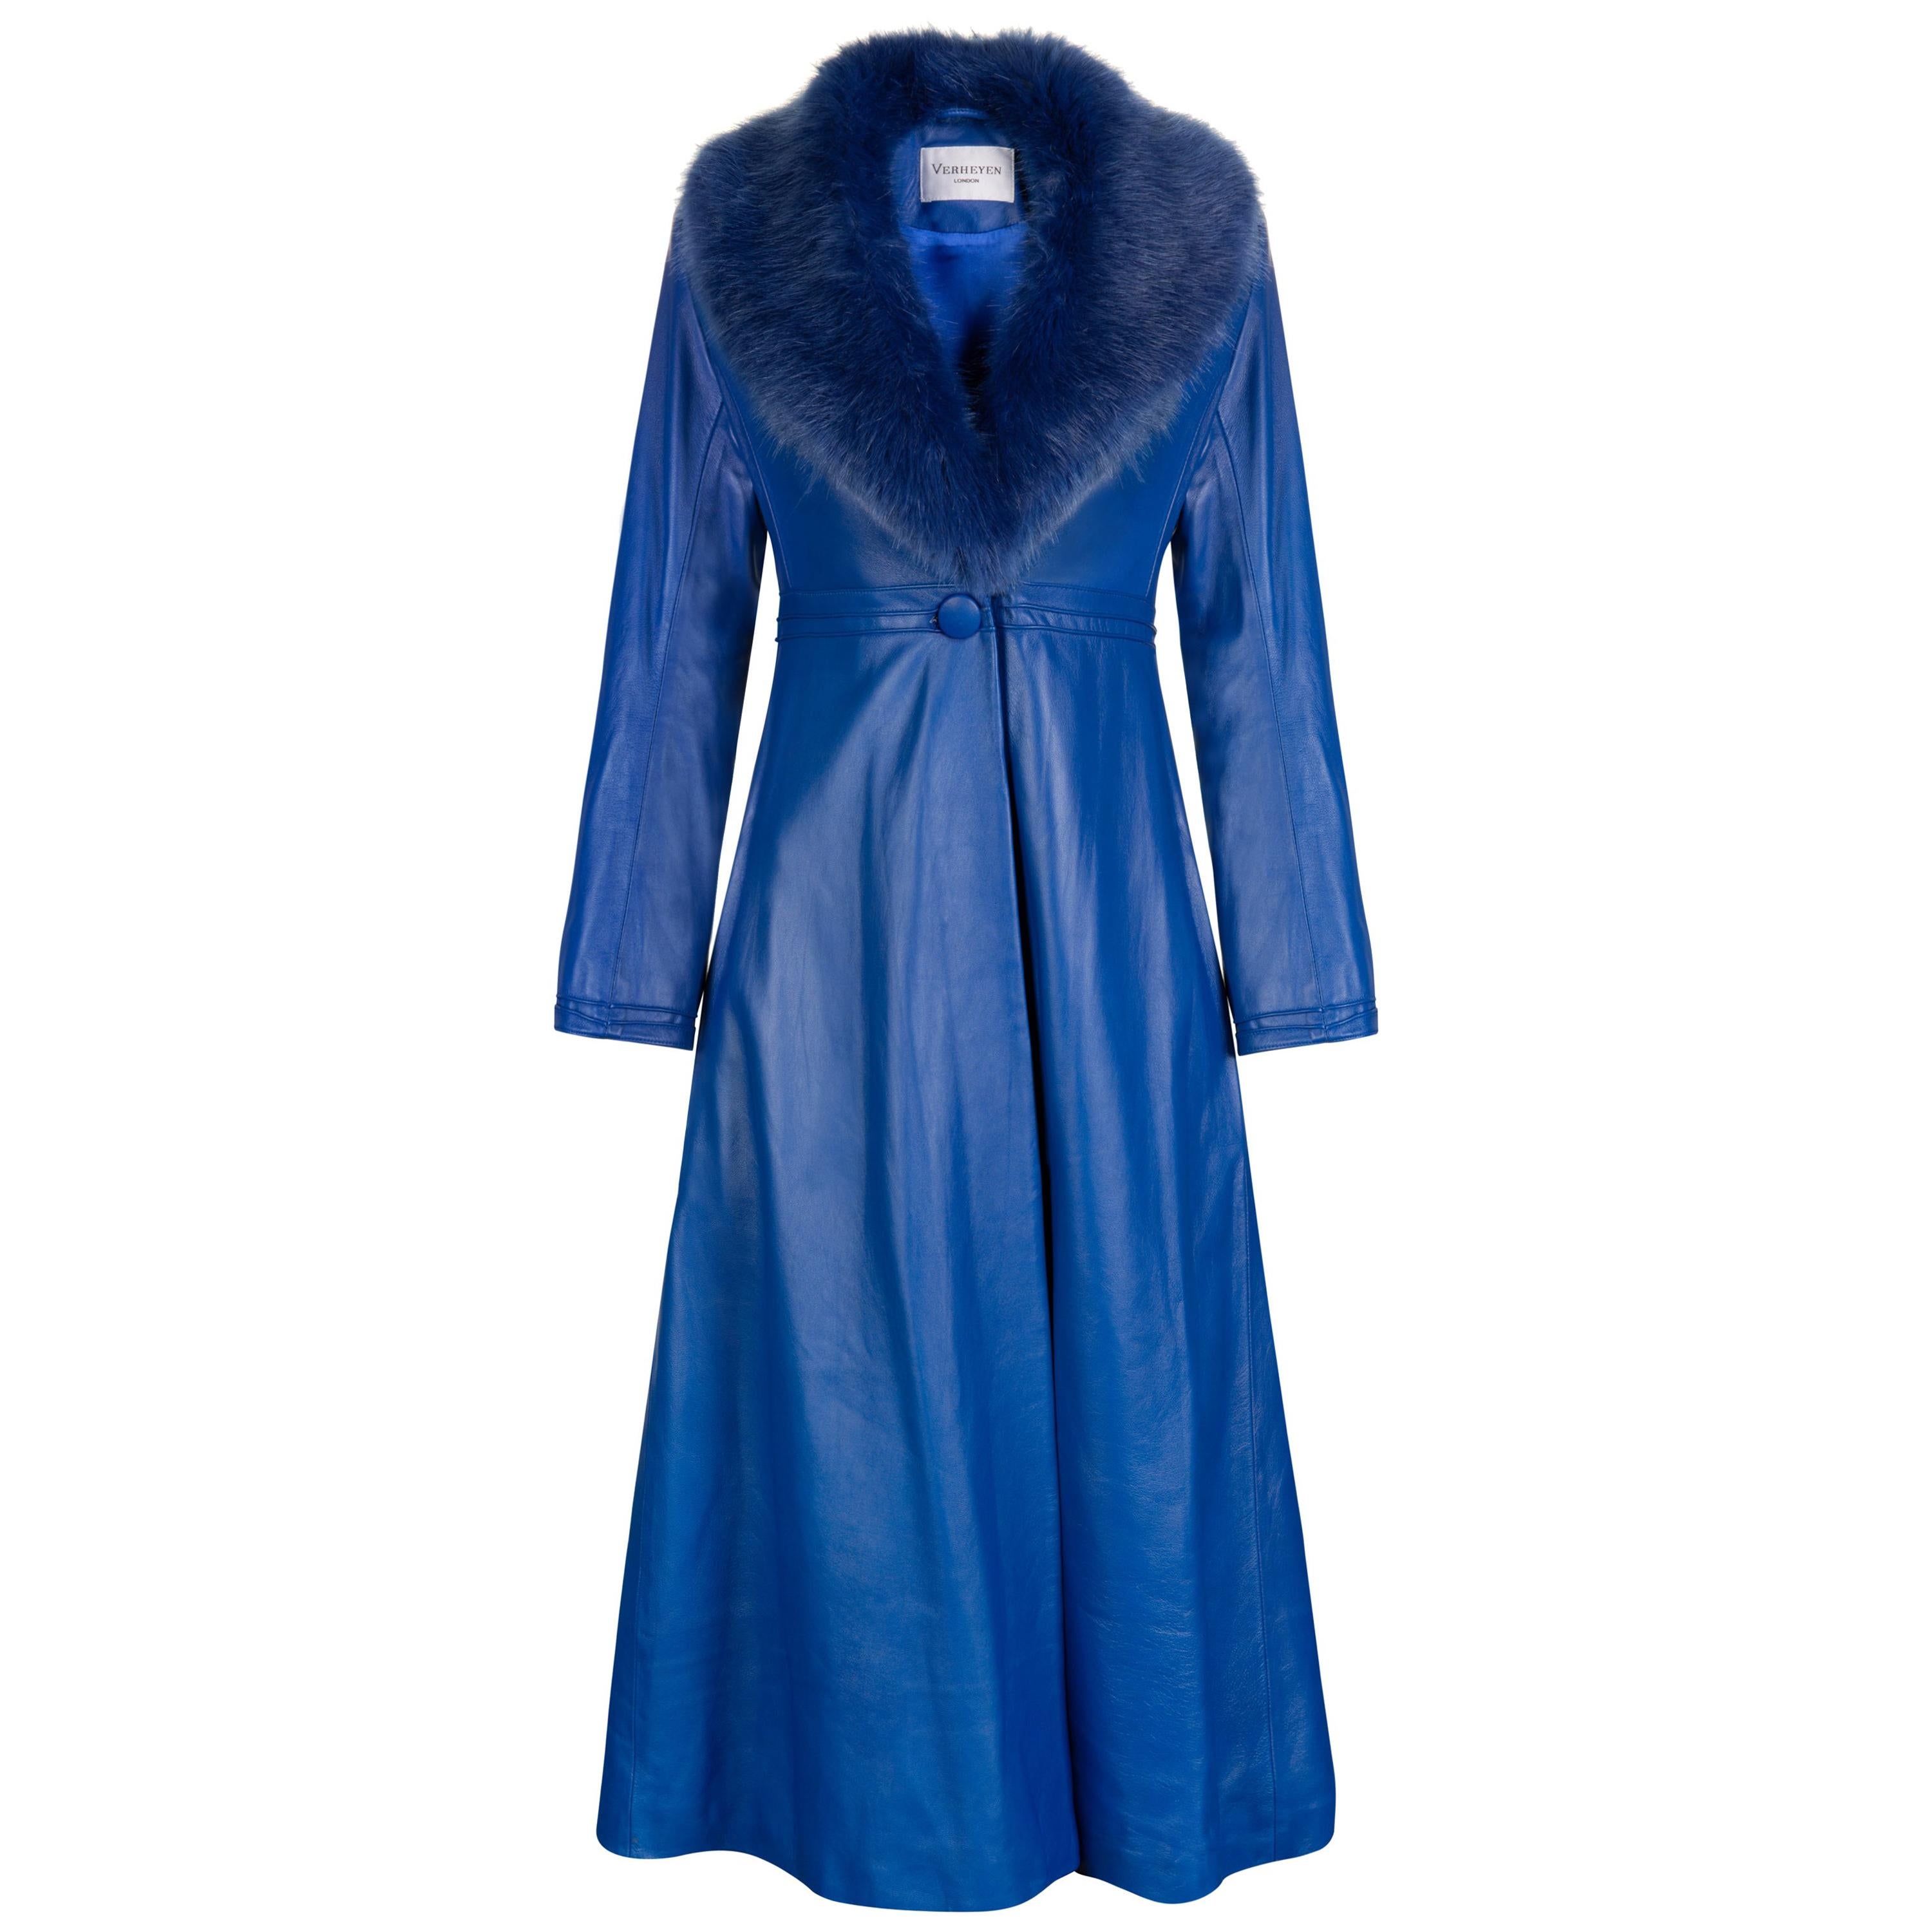 Verheyen London Edward Leather Coat in Blue with Faux Fur - Size uk 14